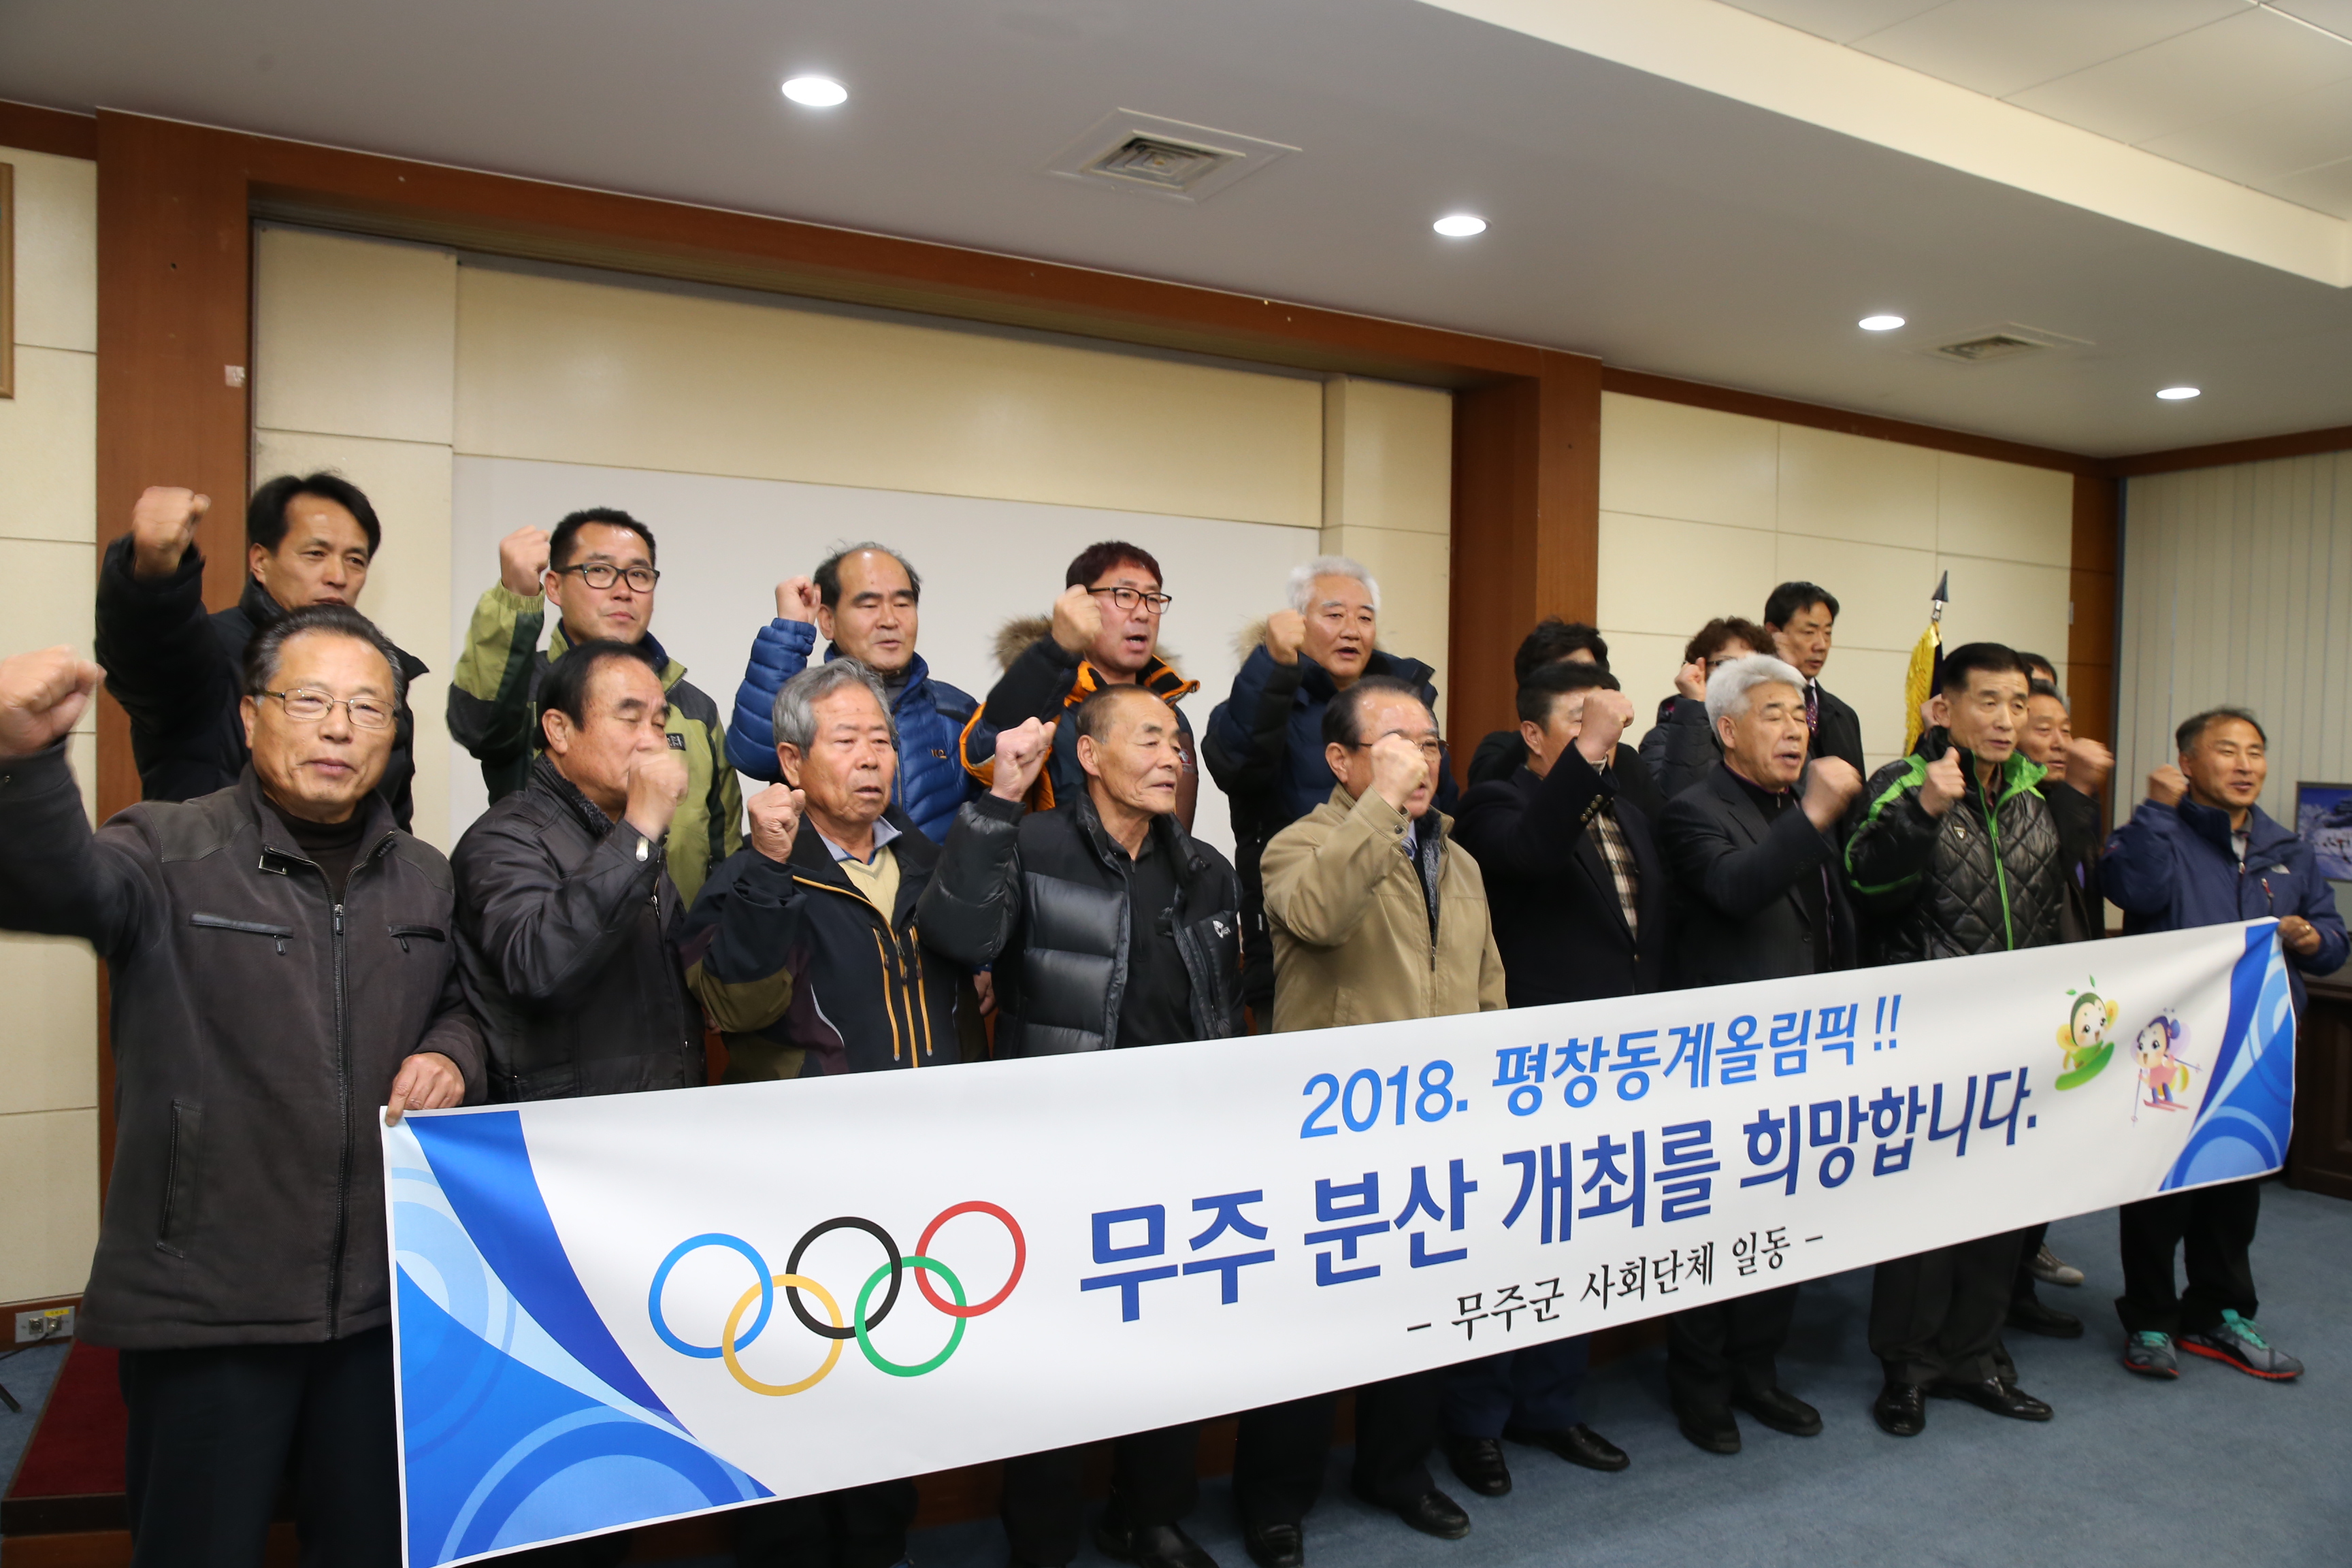 2014.12.11. 2014 평창 동계올림픽 무주 분산 개최 촉구 대국민 호소문 발표